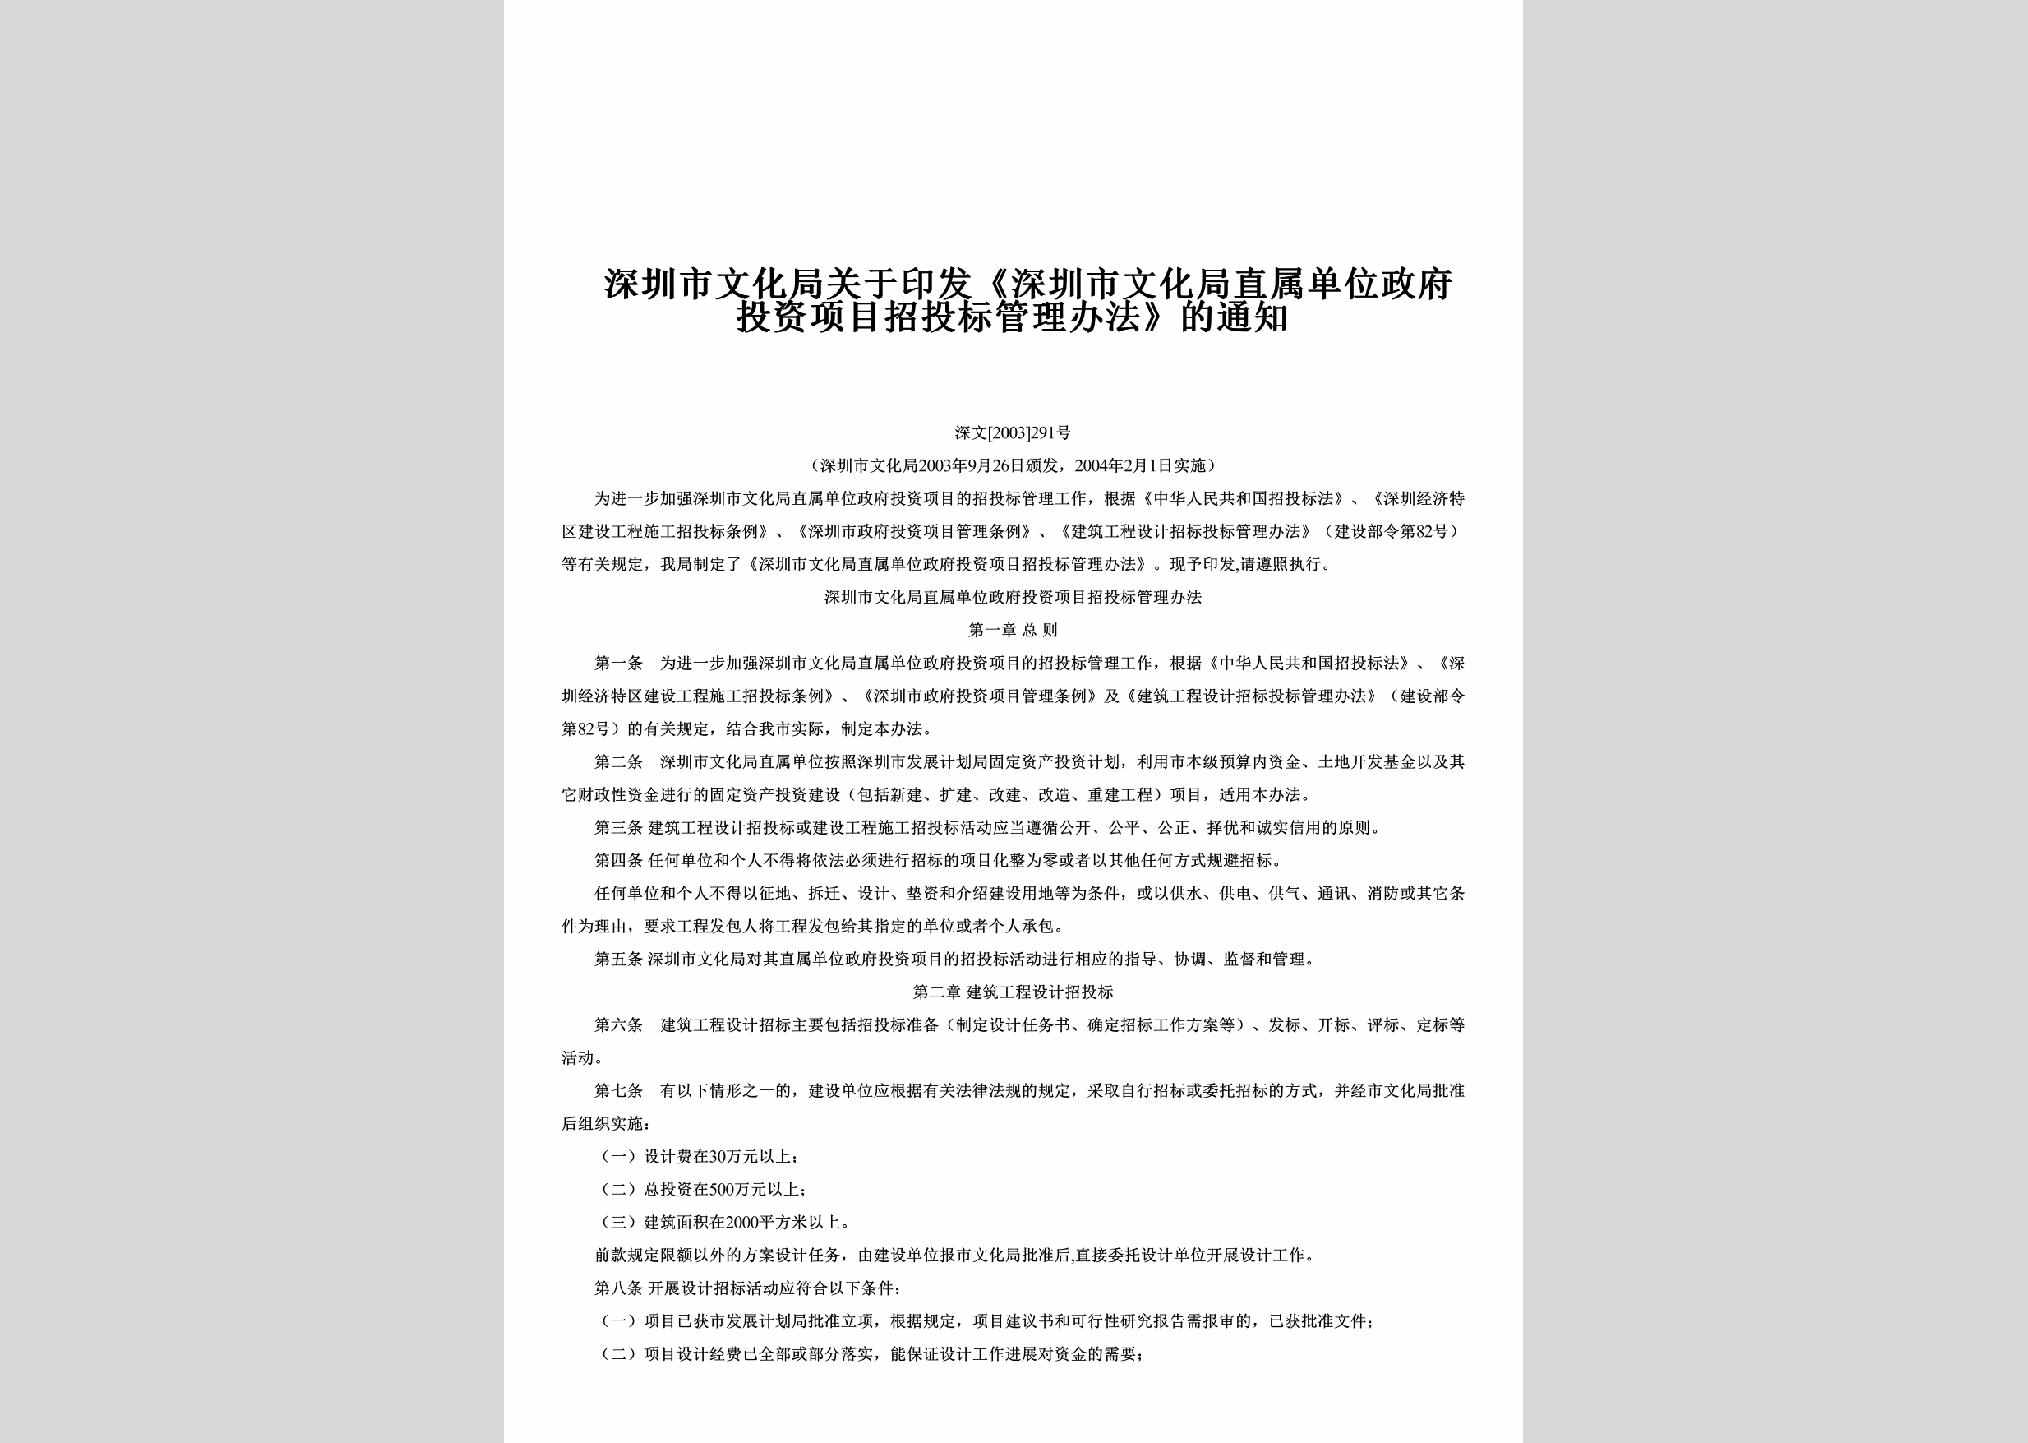 深文[2003]291号：关于印发《深圳市文化局直属单位政府投资项目招投标管理办法》的通知